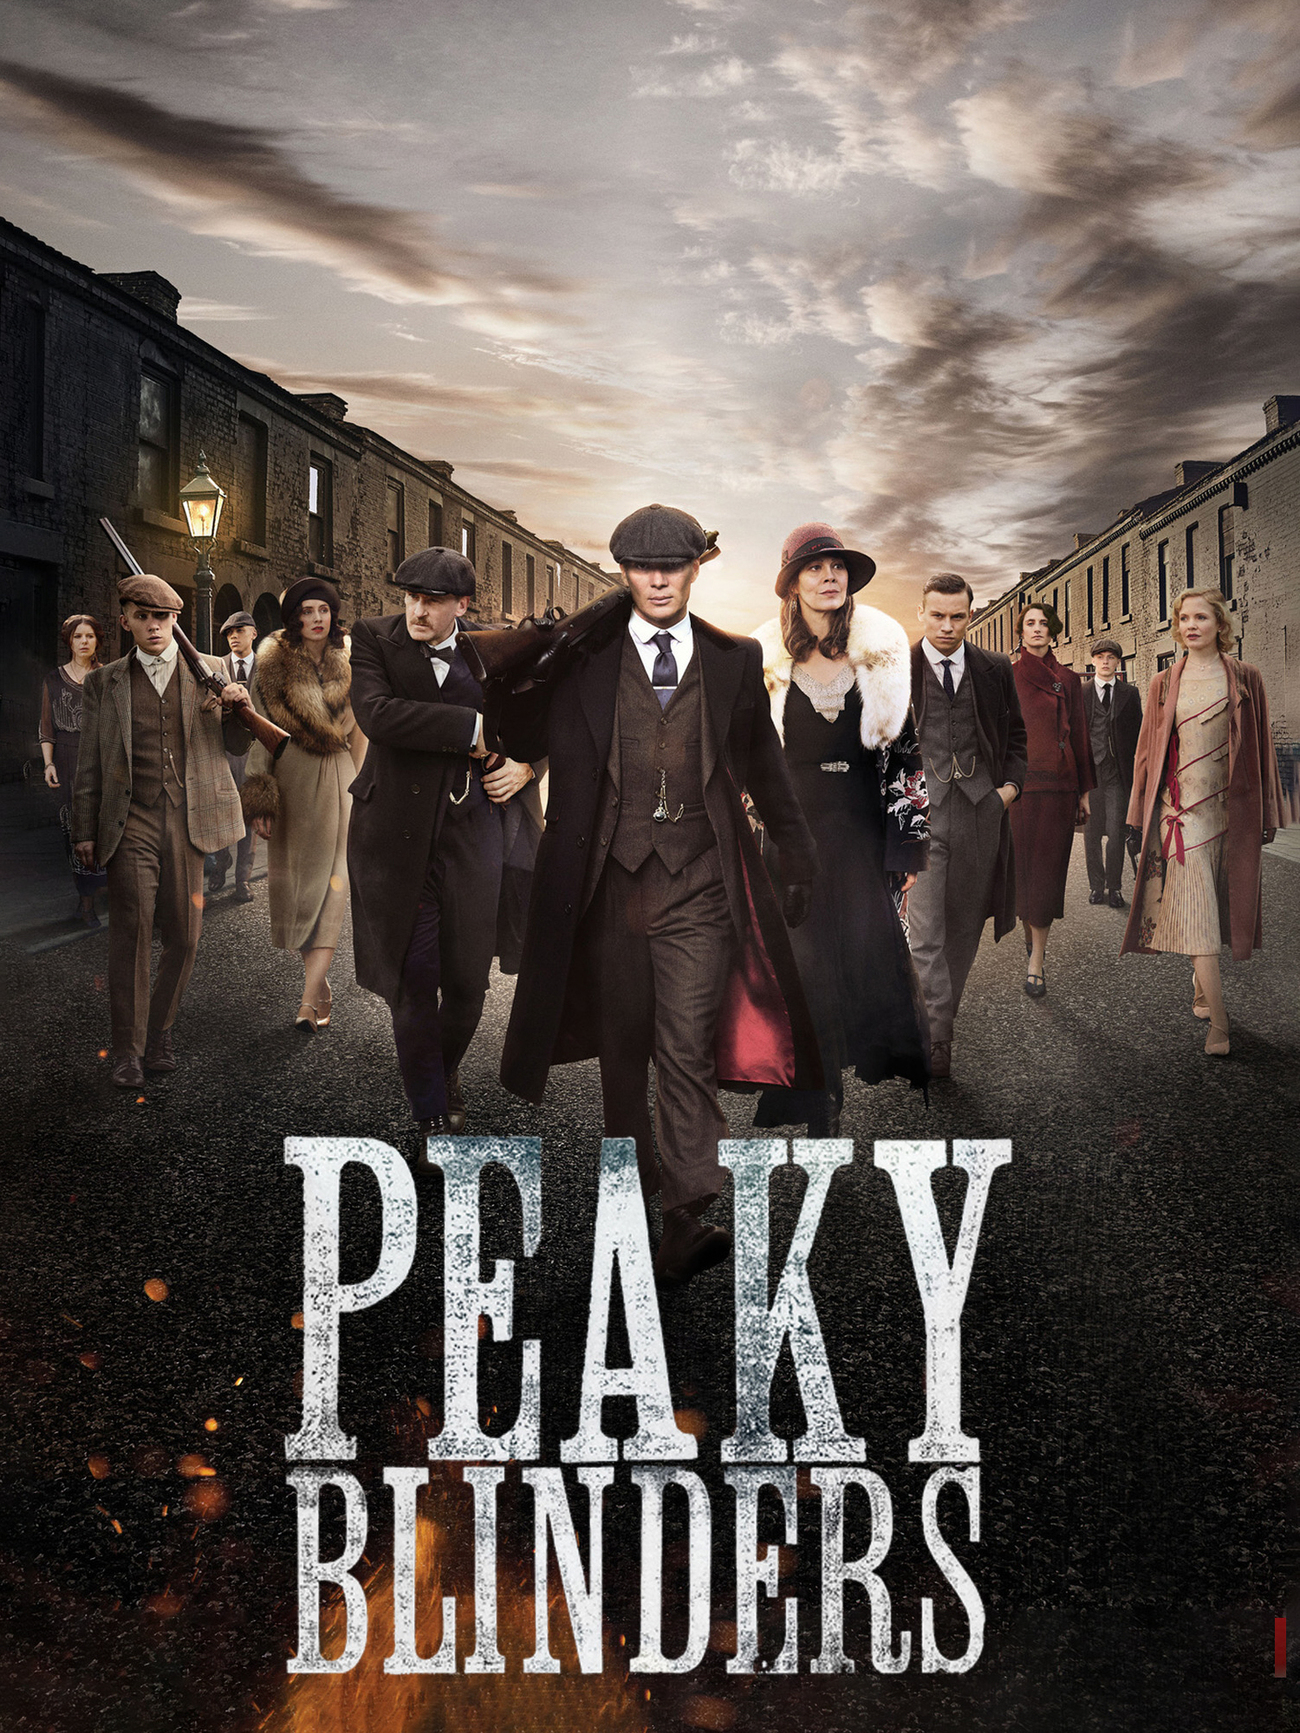 peaky blinders season 4 bbc